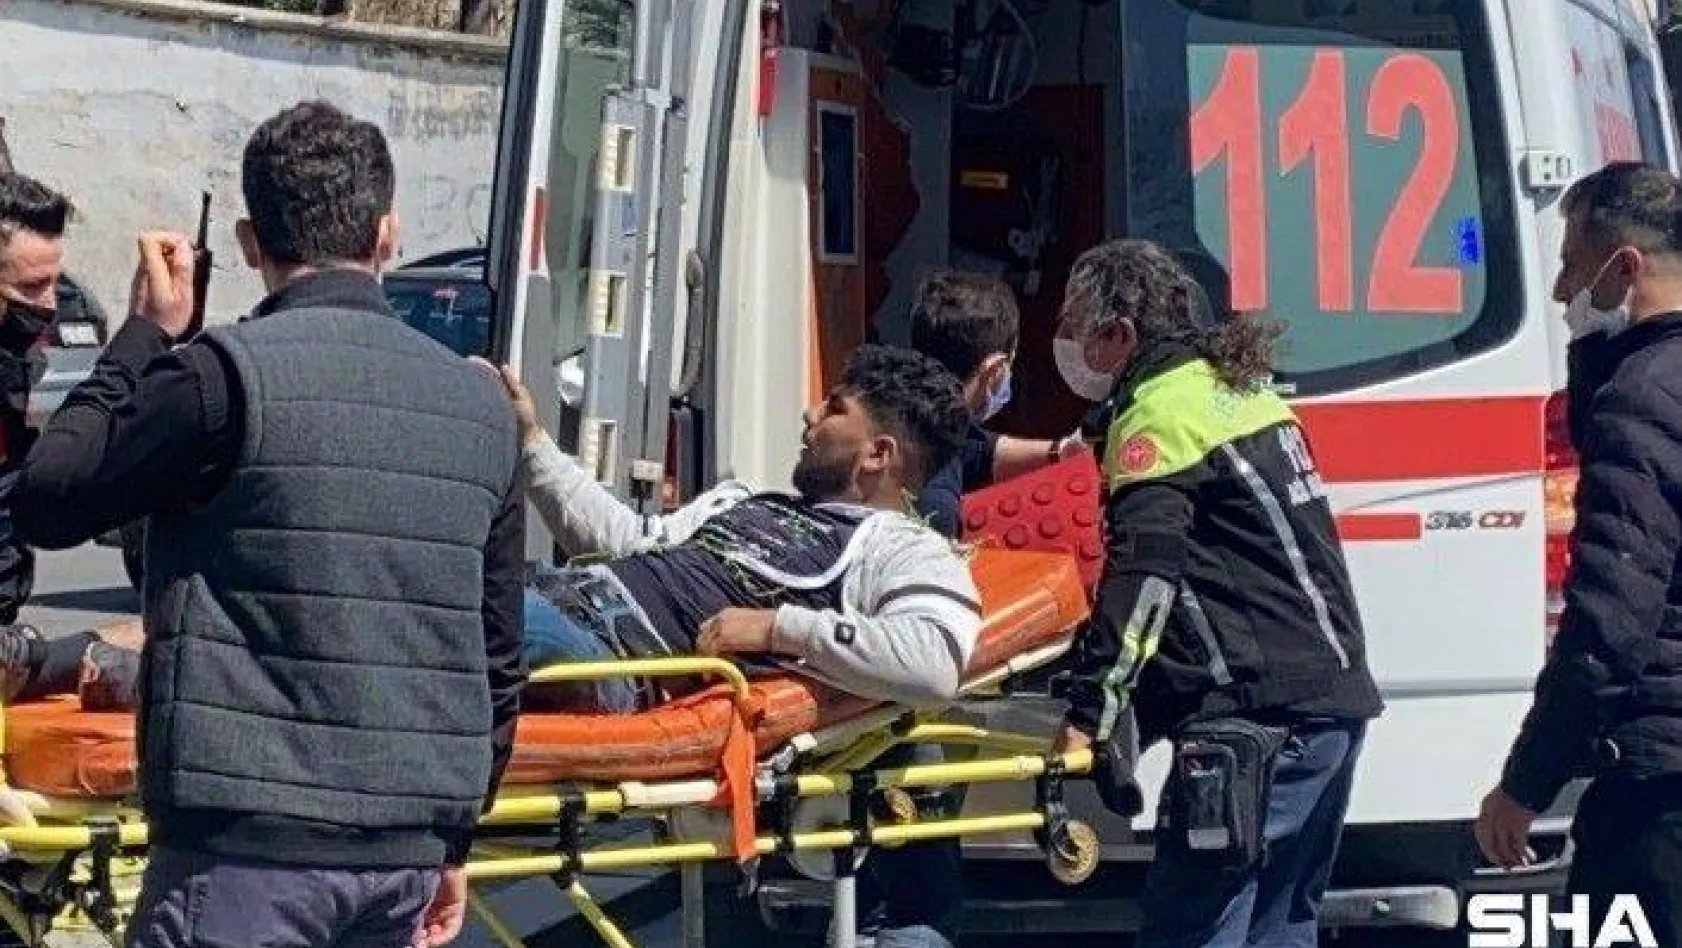 (Özel) Beşiktaş'ta 4 kişinin yaralandığı silahlı çatışmanın detayları ortaya çıktı